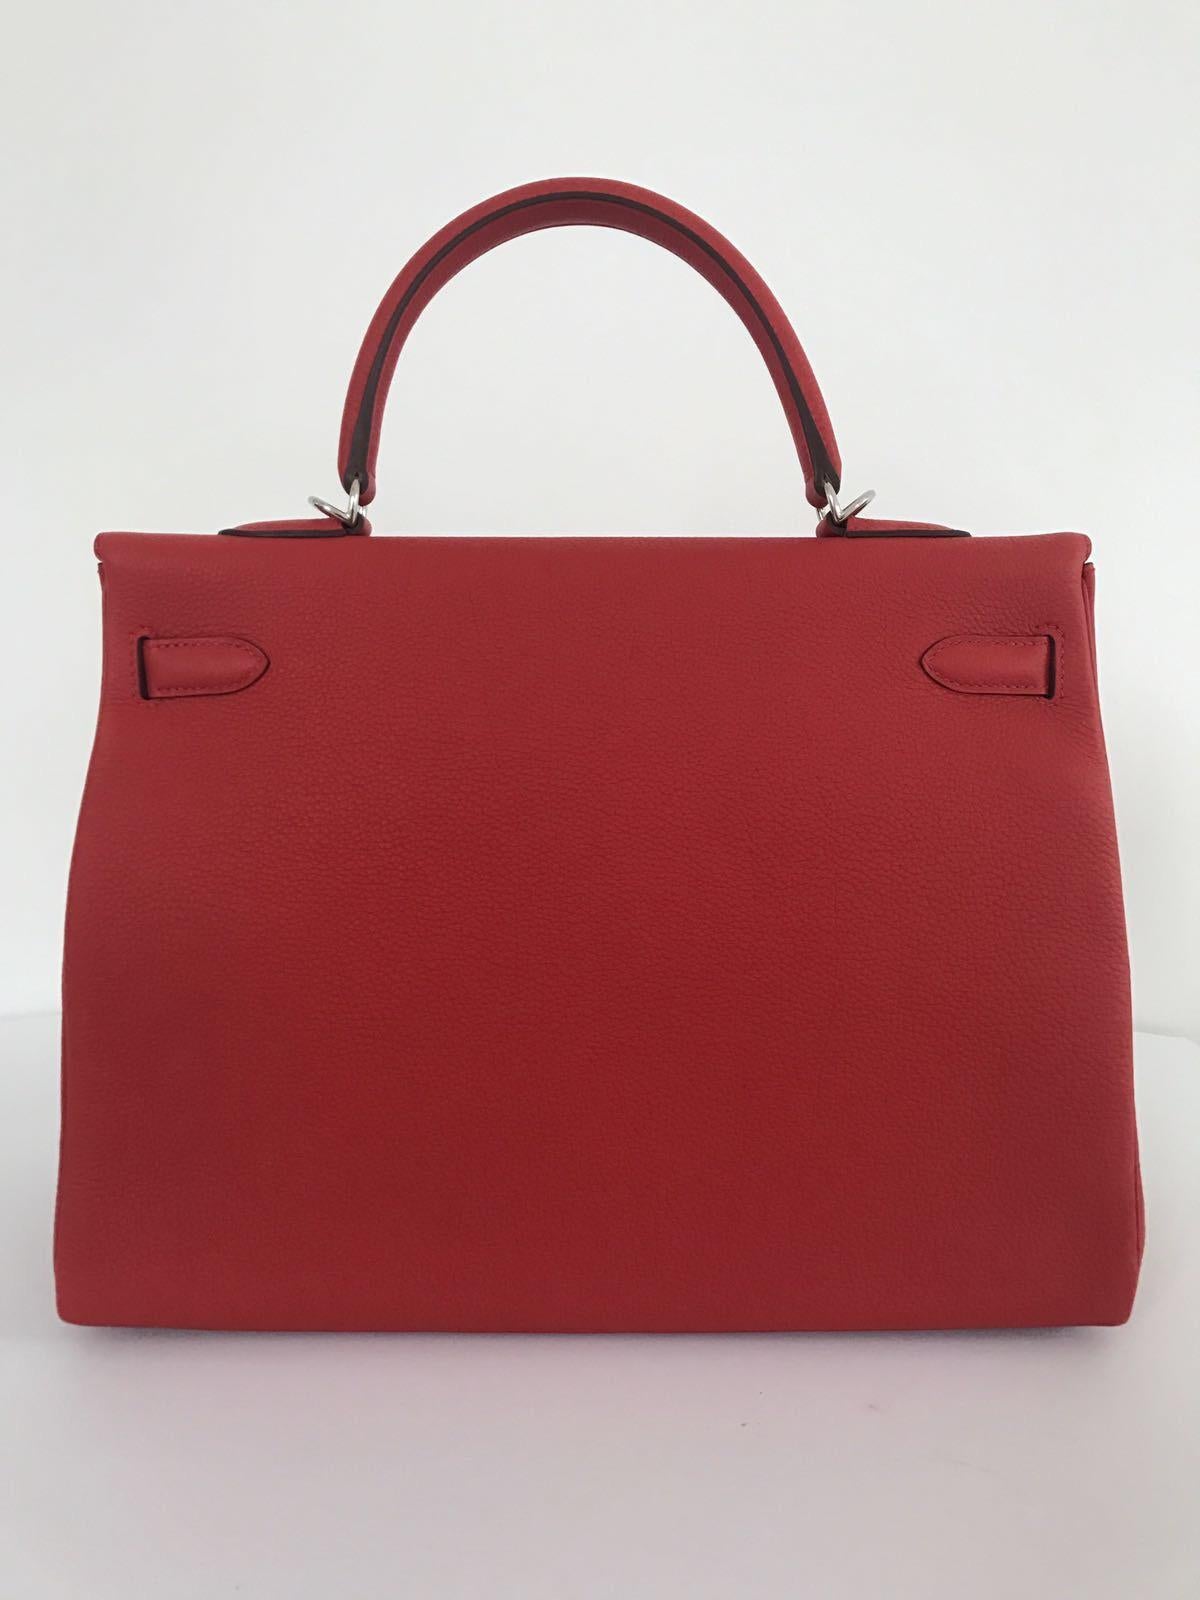 Red Hermes Geranium Togo Kelly 35cm Bag For Sale